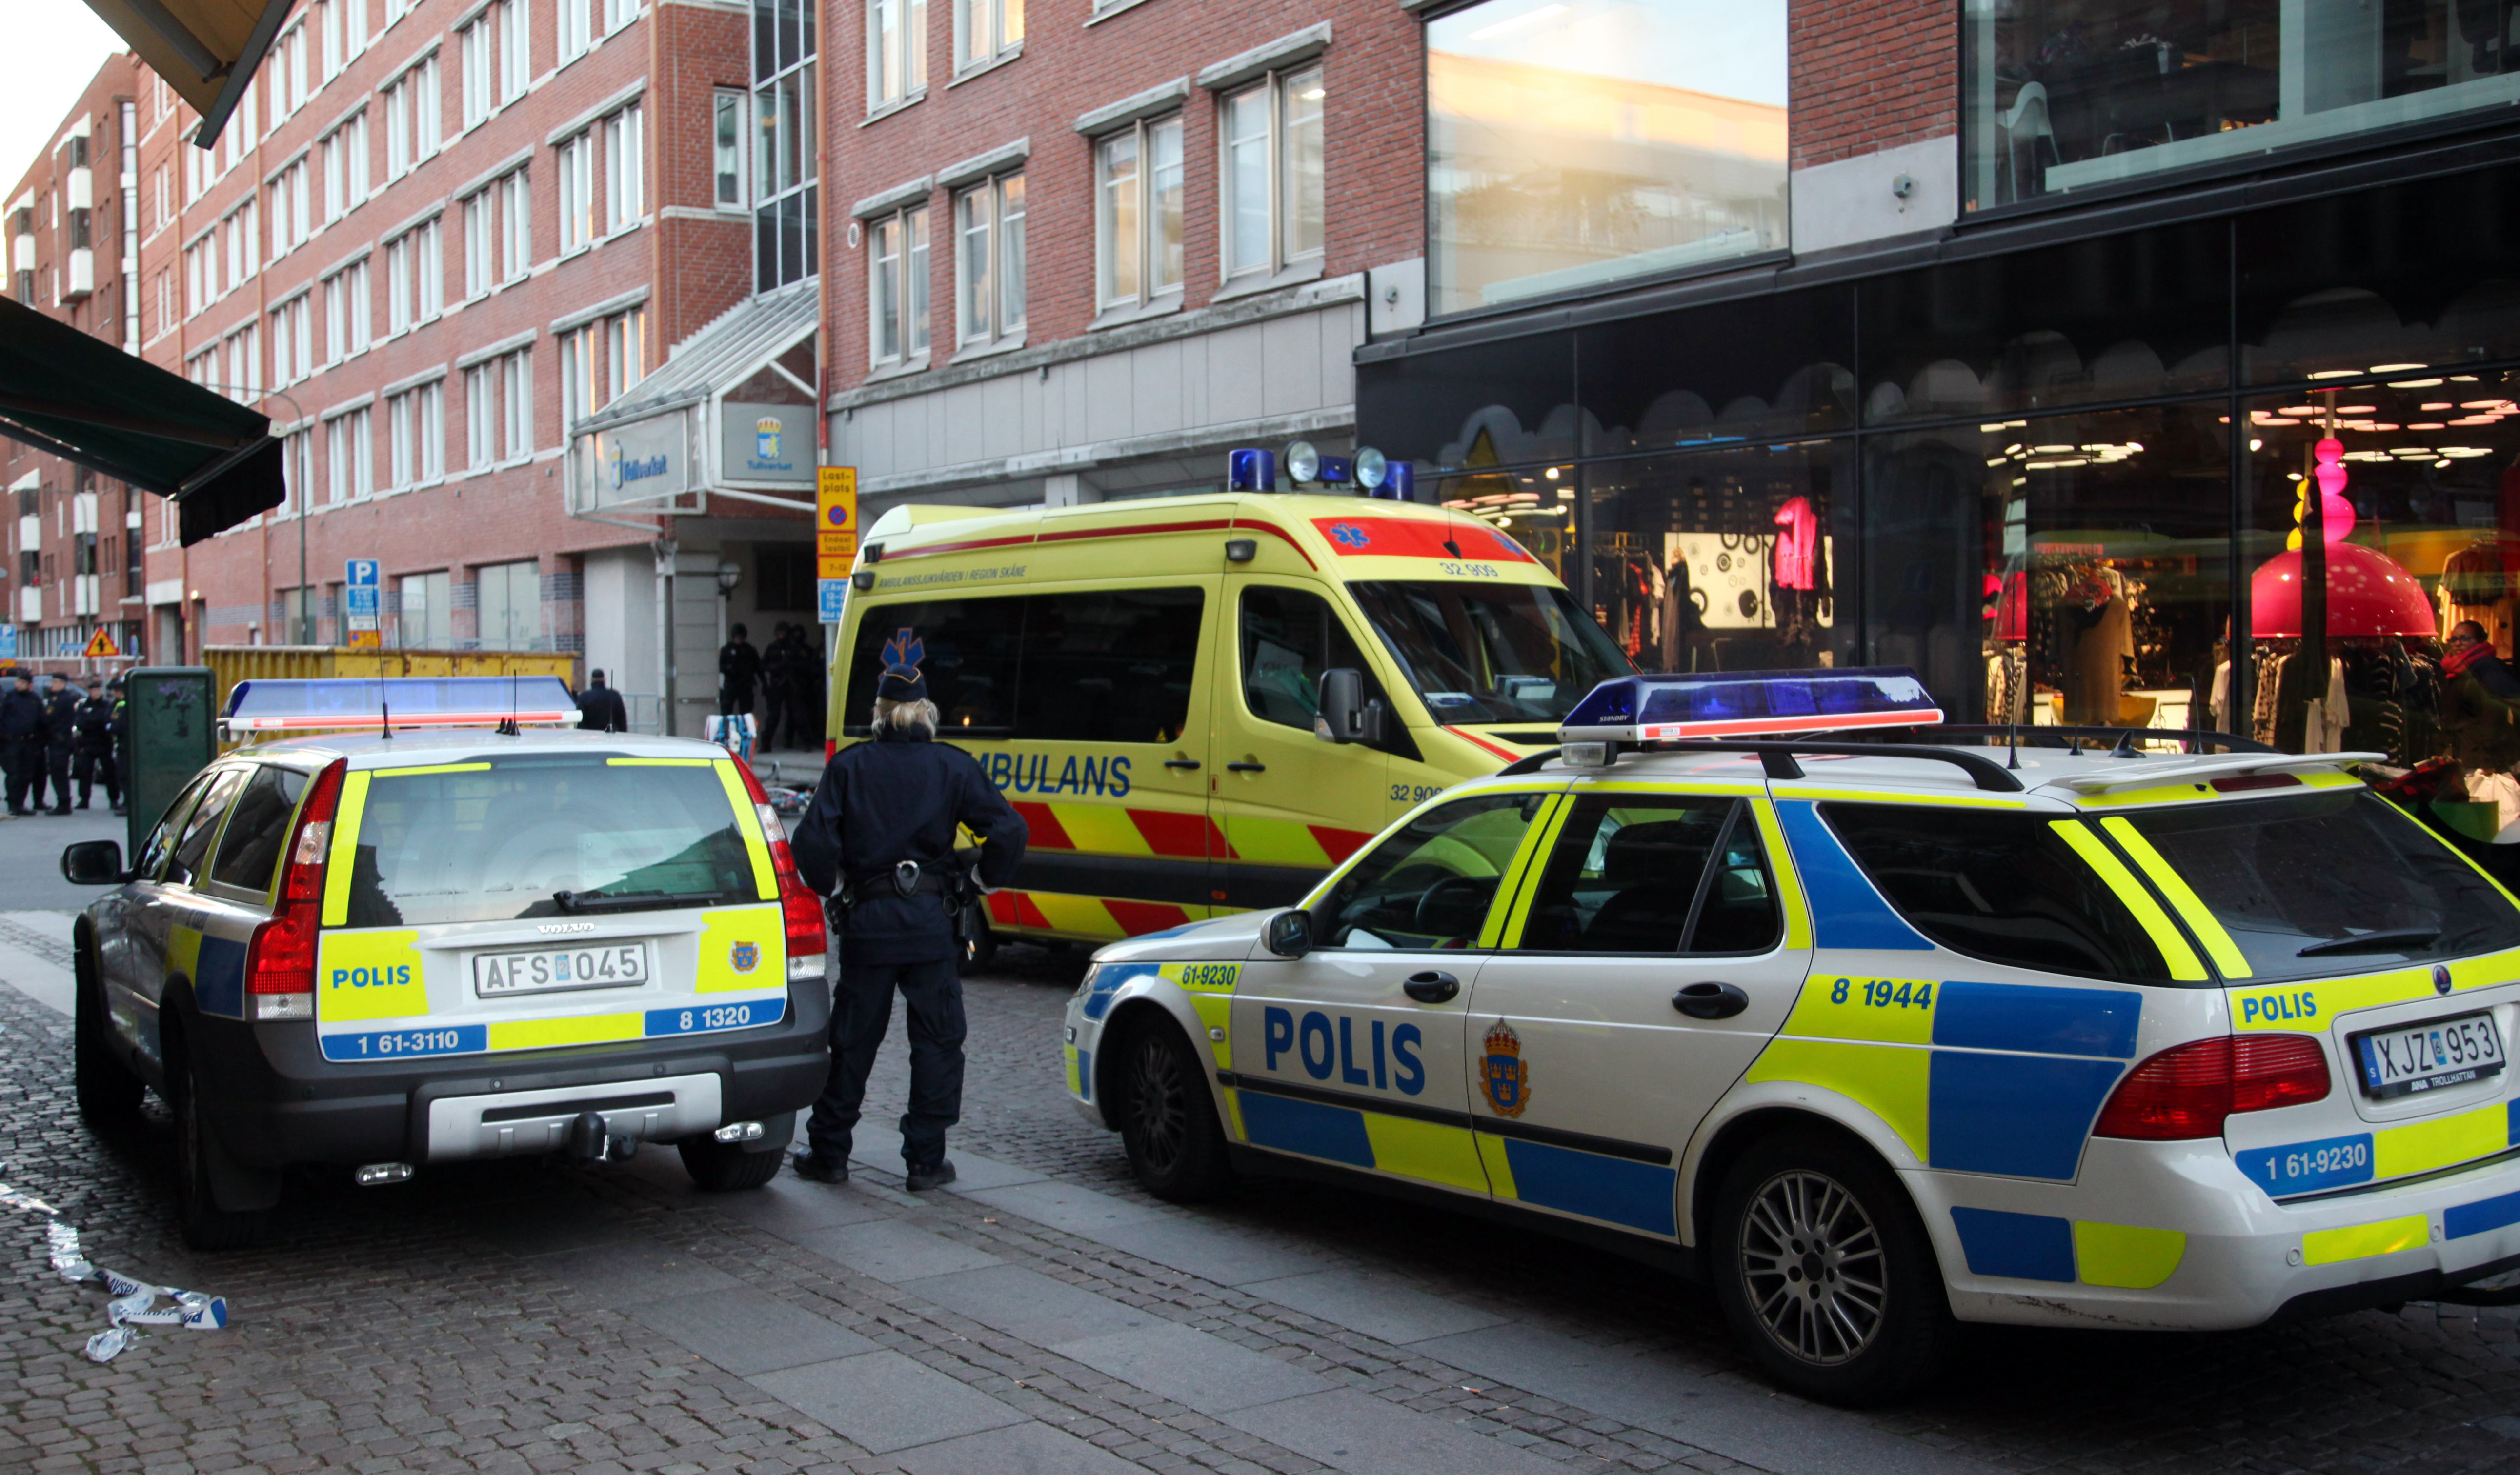 Åtta personer, varav tre eller fyra barn, hölls instängda i en lägenhet i Malmö. Polisen lyckades förhandla ut mannen som hotade skada sig själv. Bilden är från en annan händelse.